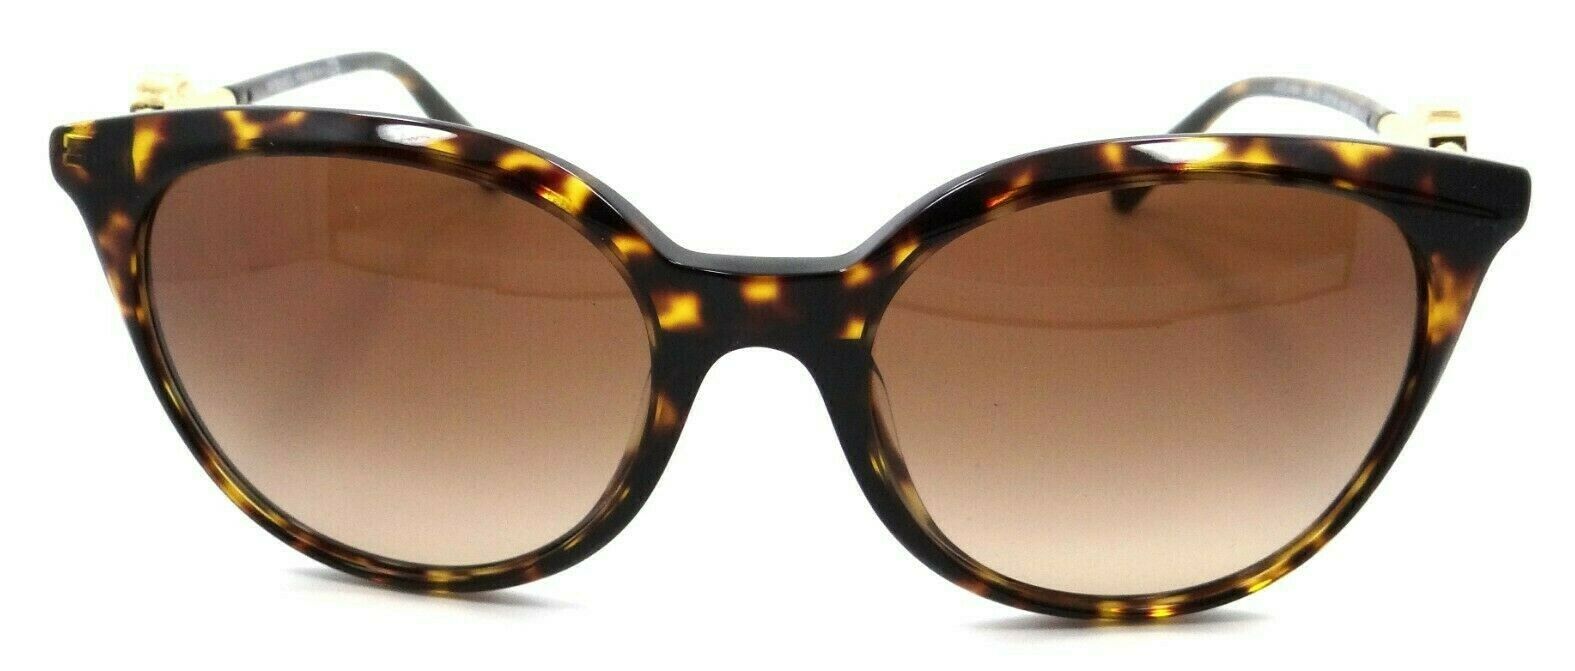 Versace Sunglasses VE 4404 108/74 55-19-140 Havana / Brown Gradient Italy-8056597385046-classypw.com-1